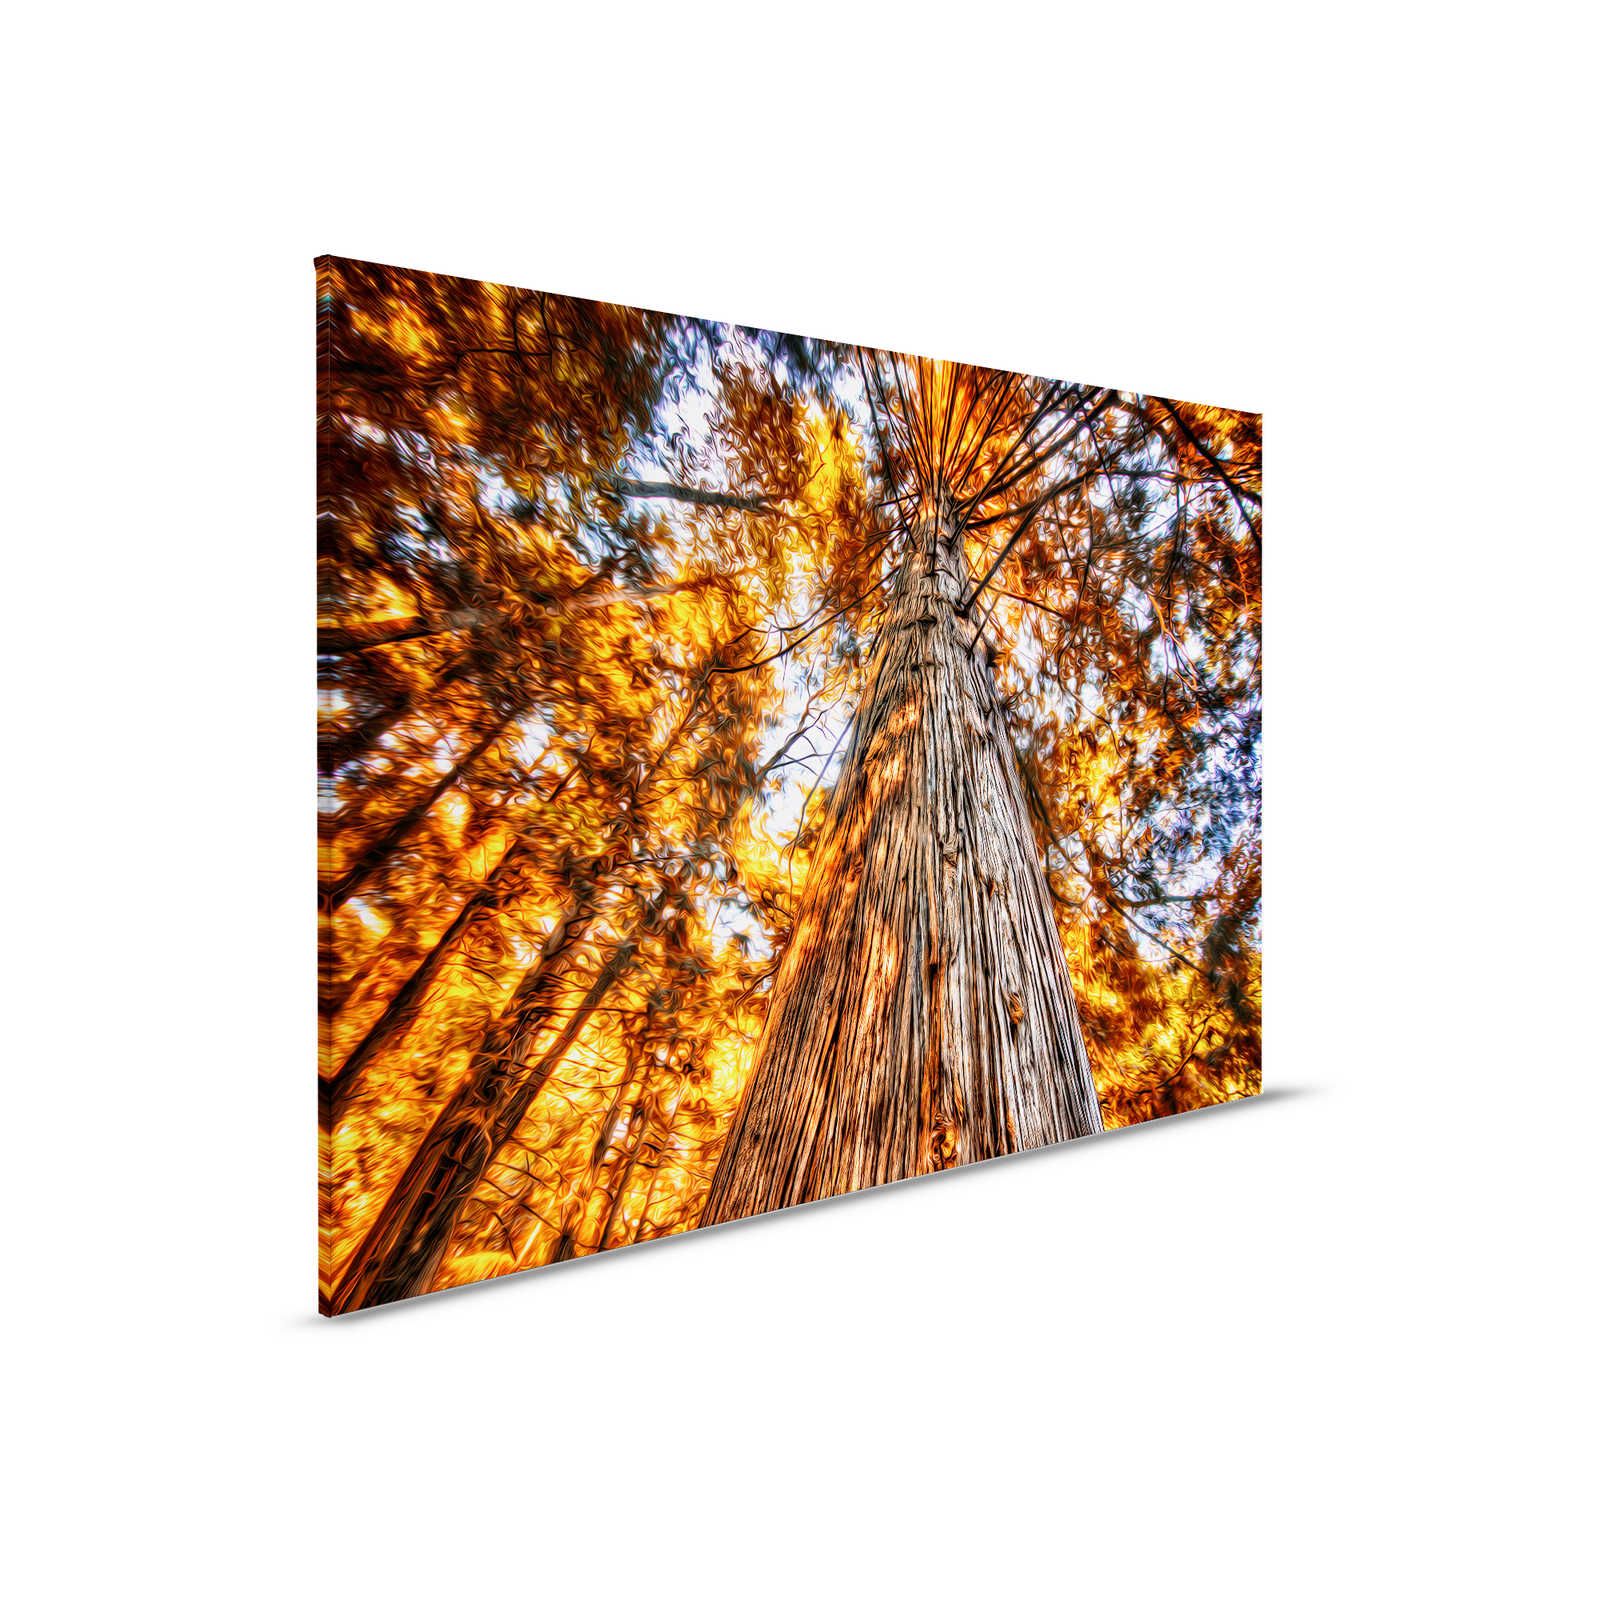 Tableau toile Vue de la cime d'un arbre aux couleurs incandescentes - 0,90 m x 0,60 m
